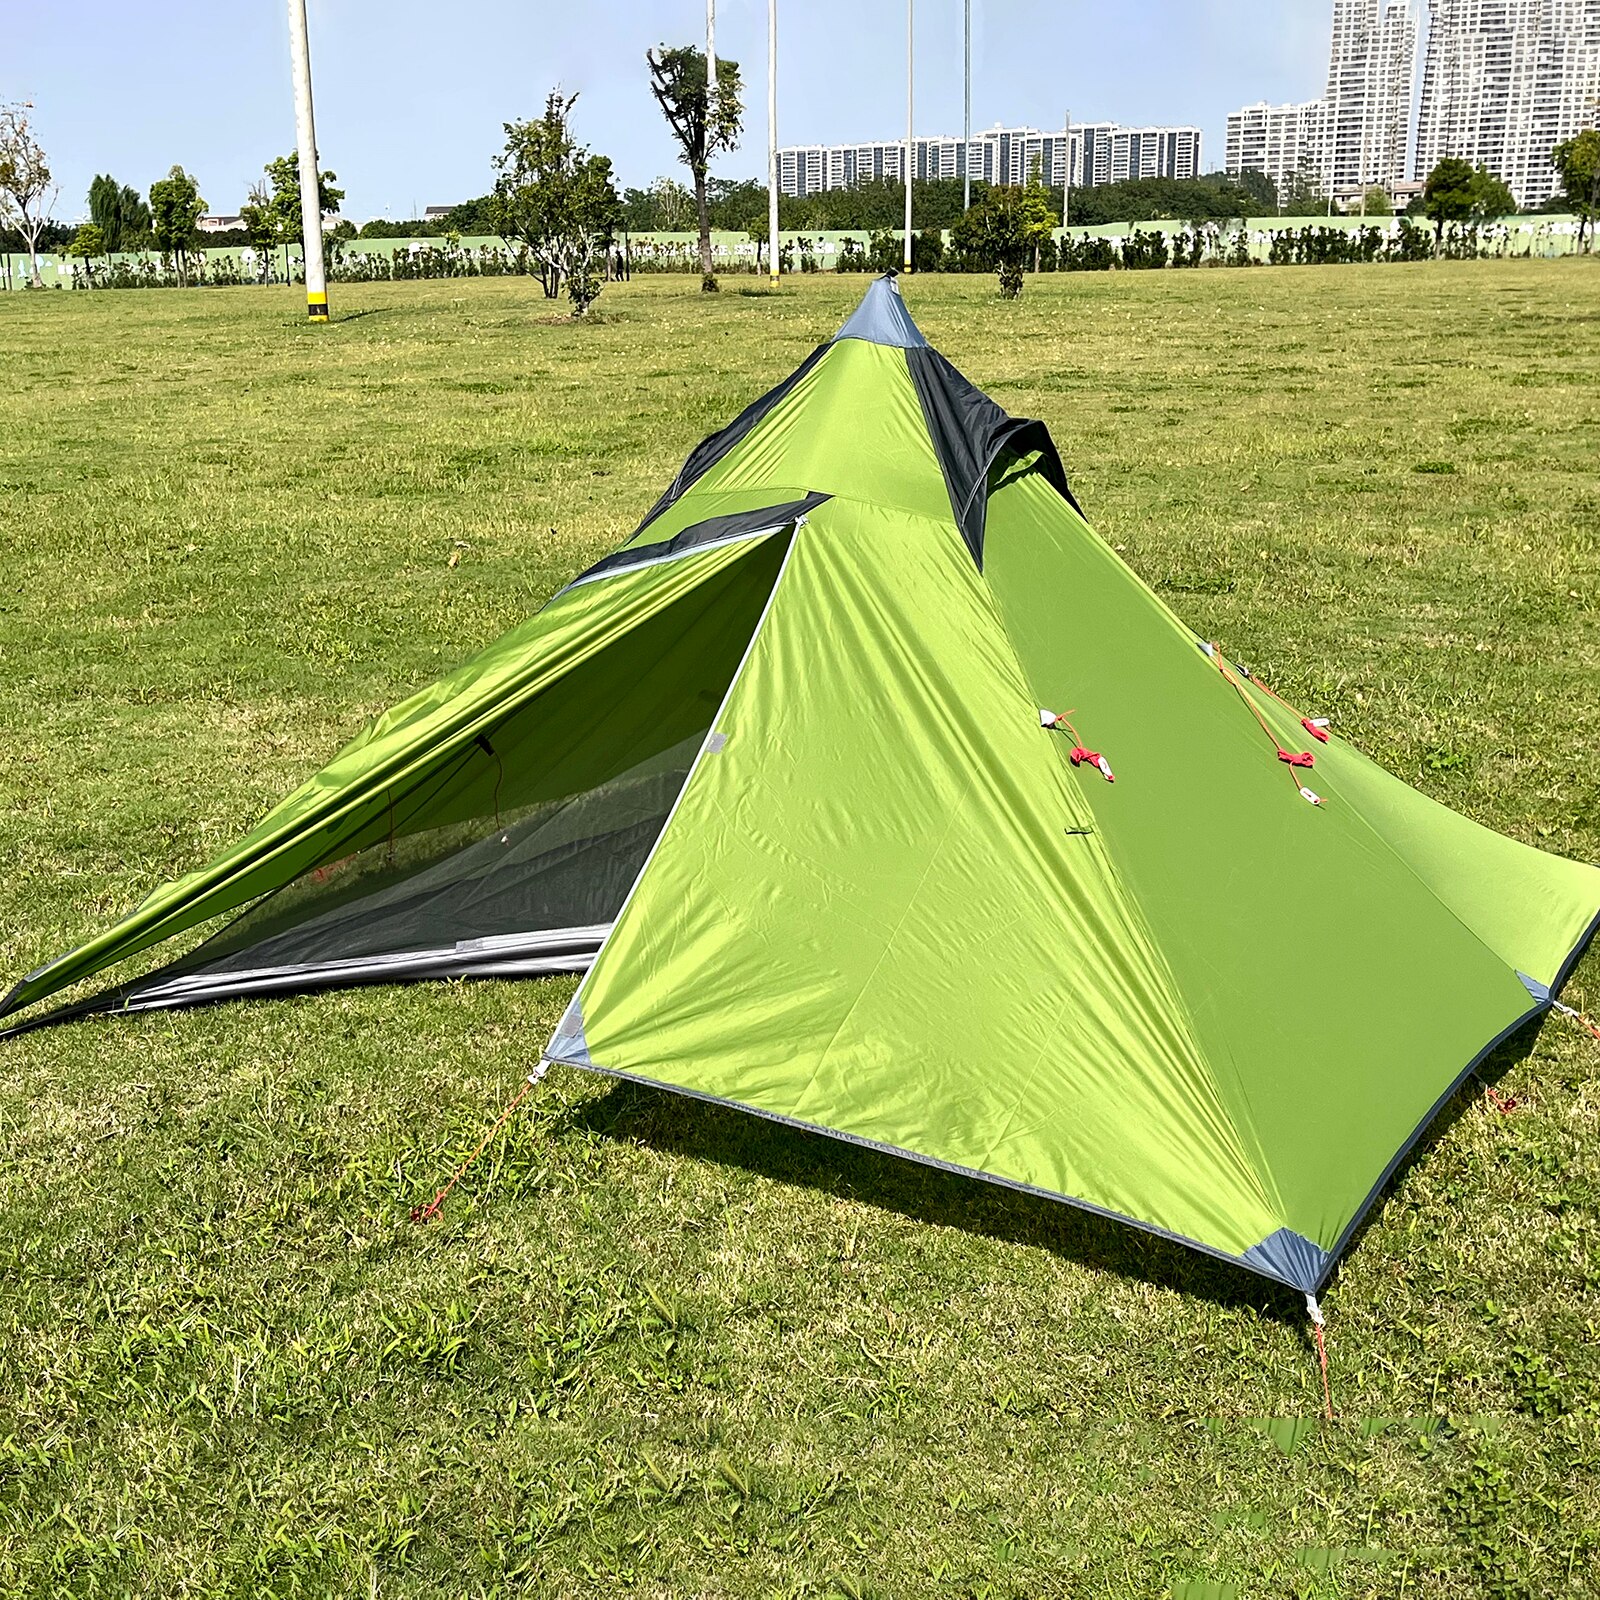 경량 방수 방풍 피라미드 텐트, 야외 캠핑 티피 텐트, 여행 하이킹용, 1-2 인용